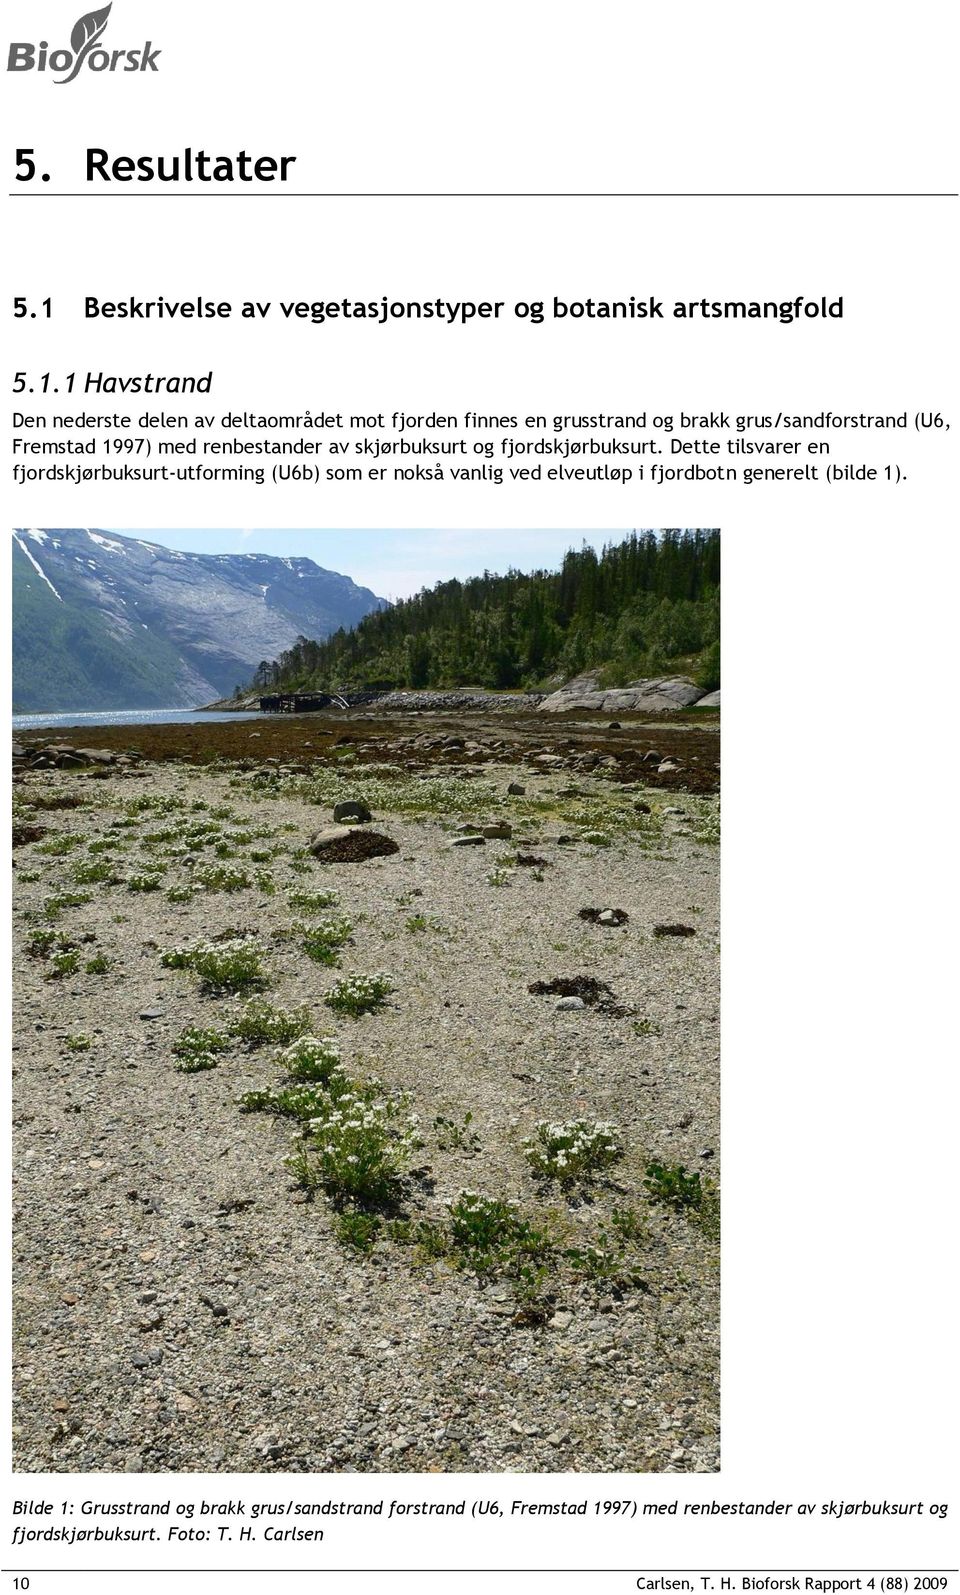 1 Havstrand Den nederste delen av deltaområdet mot fjorden finnes en grusstrand og brakk grus/sandforstrand (U6, Fremstad 1997) med renbestander